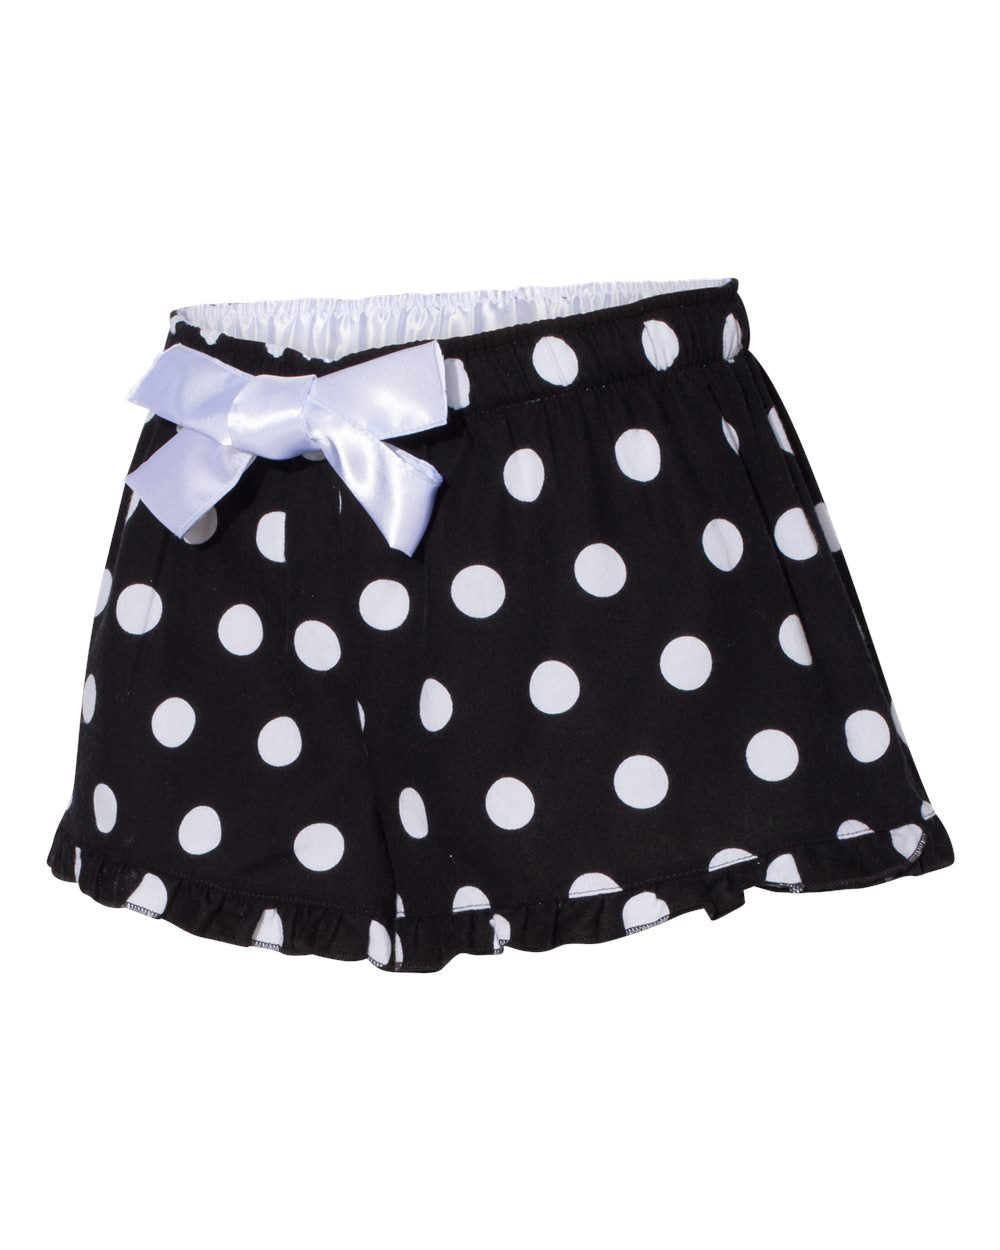 polka dot or plaid ruffled boxer shorts